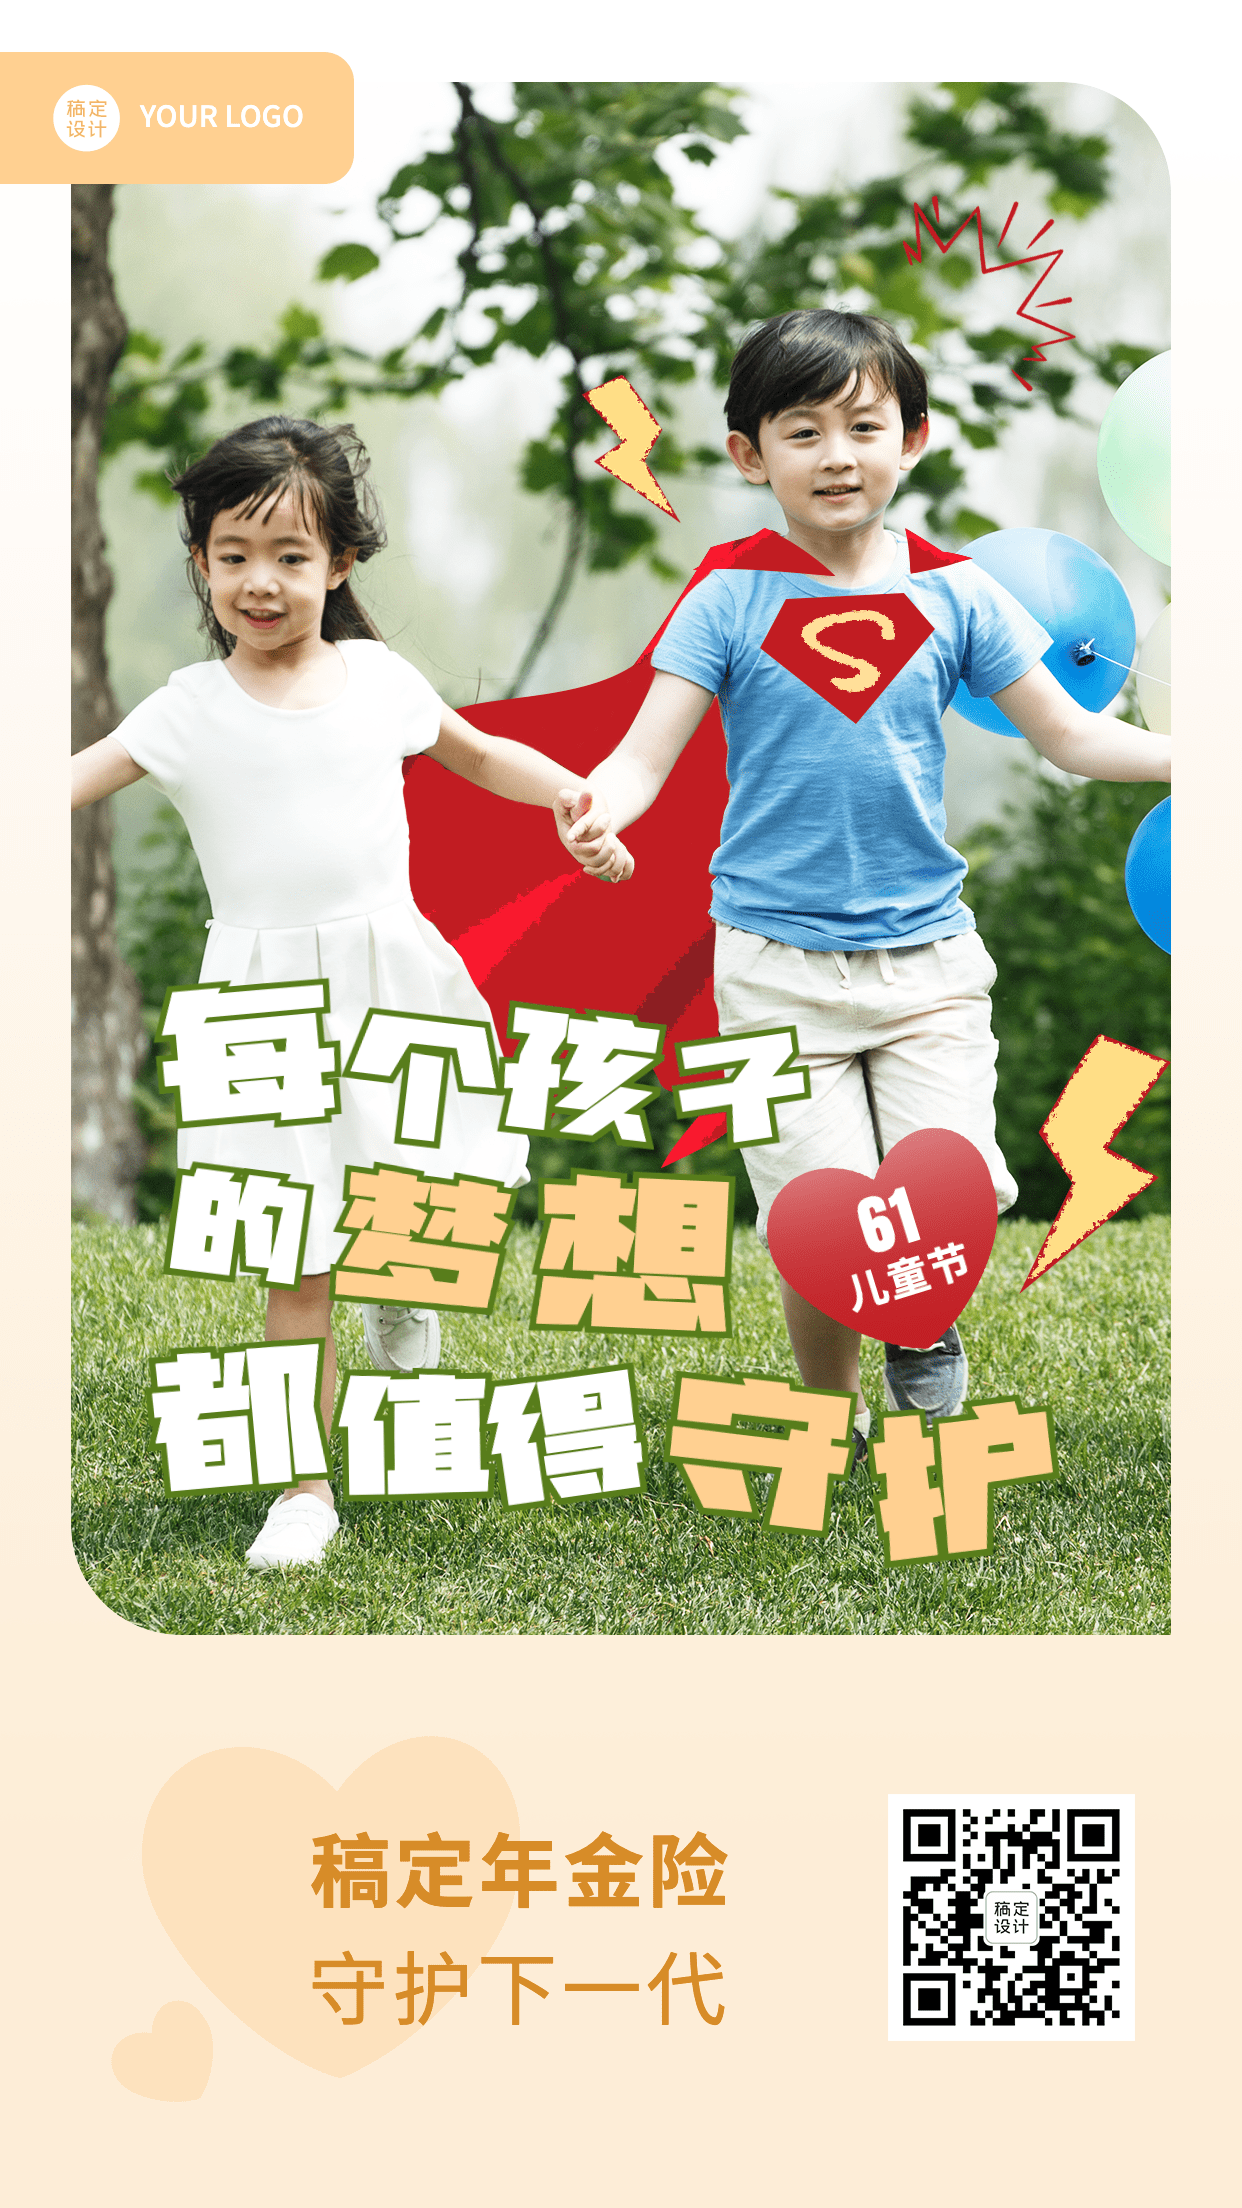 金融保险61儿童节节日祝福实景风手机海报预览效果